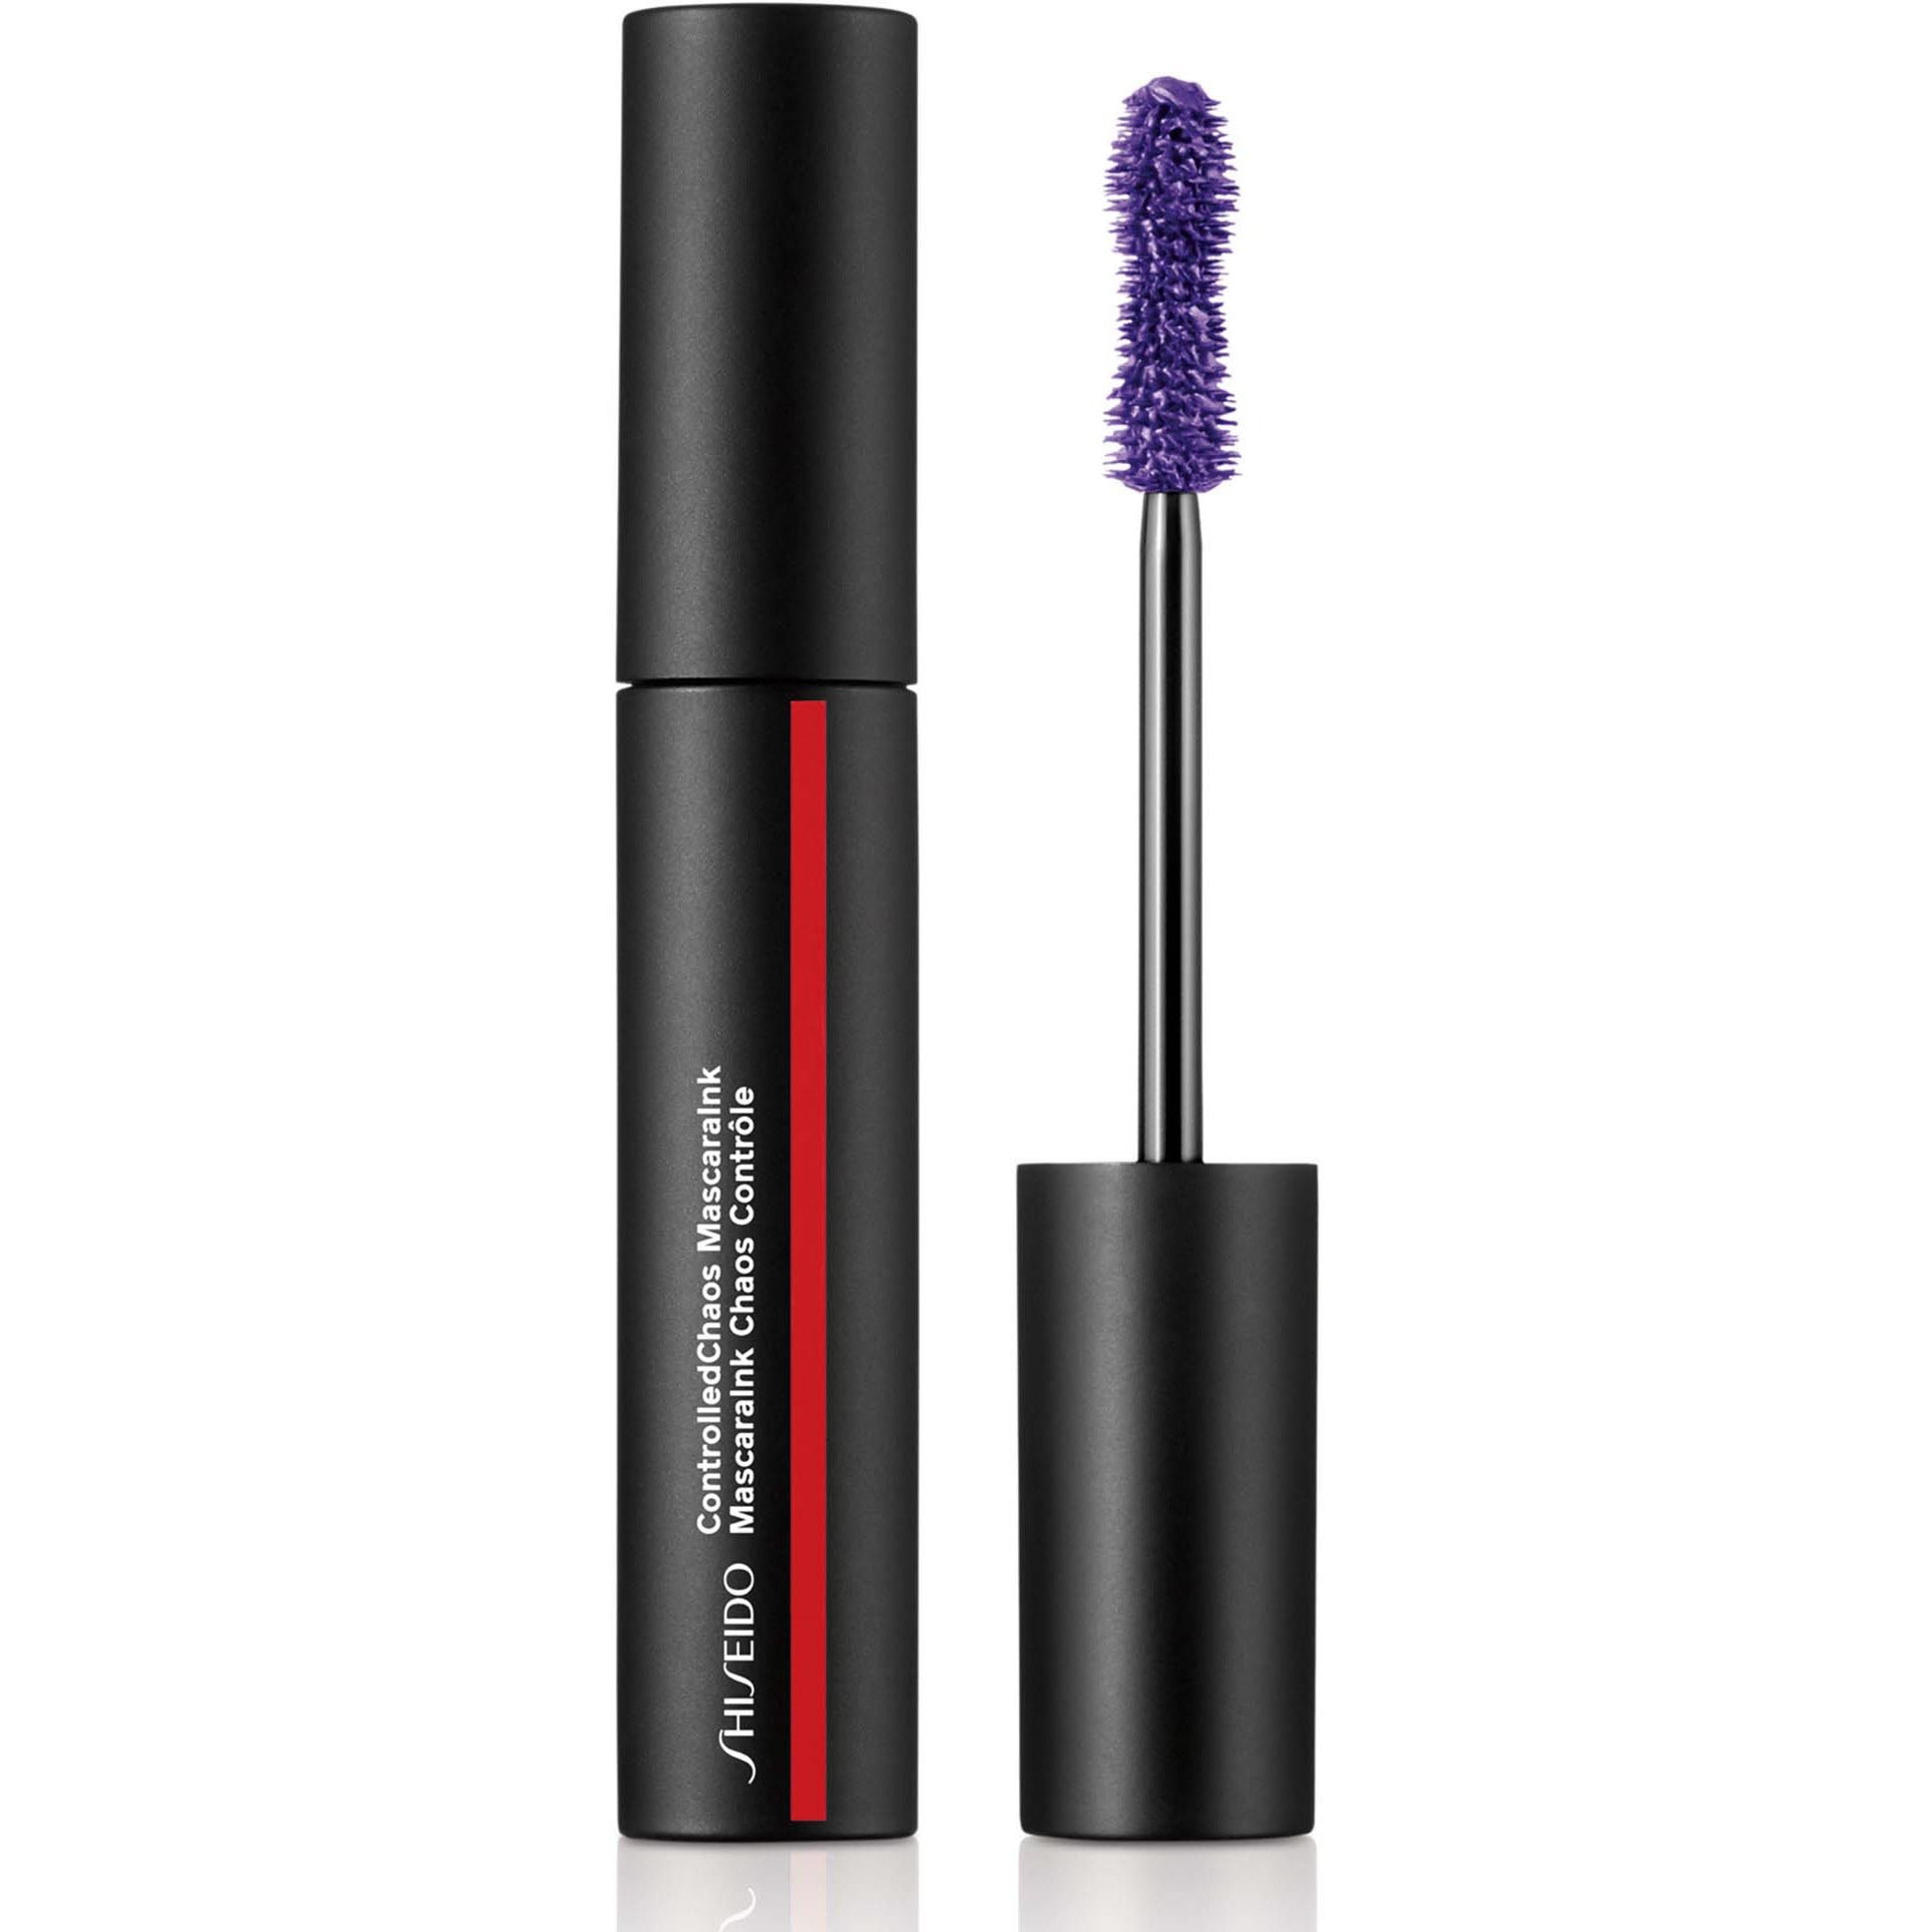 Bilde av Shiseido Controlledchaos Mascara 03 Violet Vibe 11,5 Ml 03 Violet Vibe